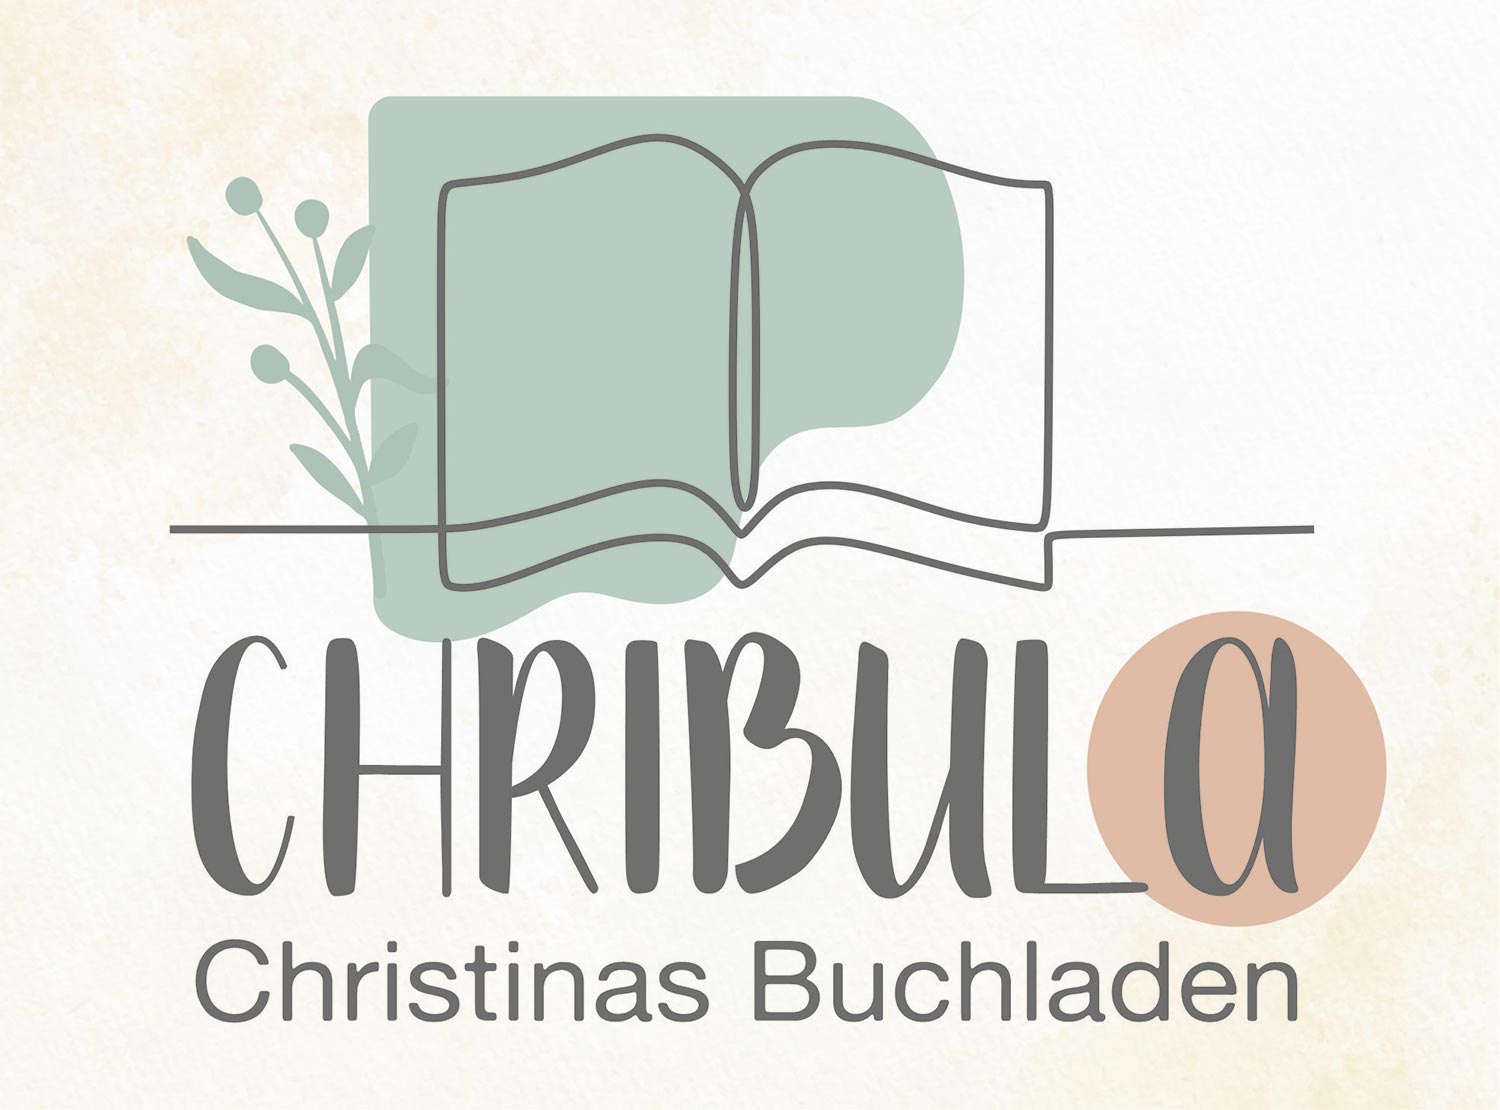 Christinas Buchladen - Chribula